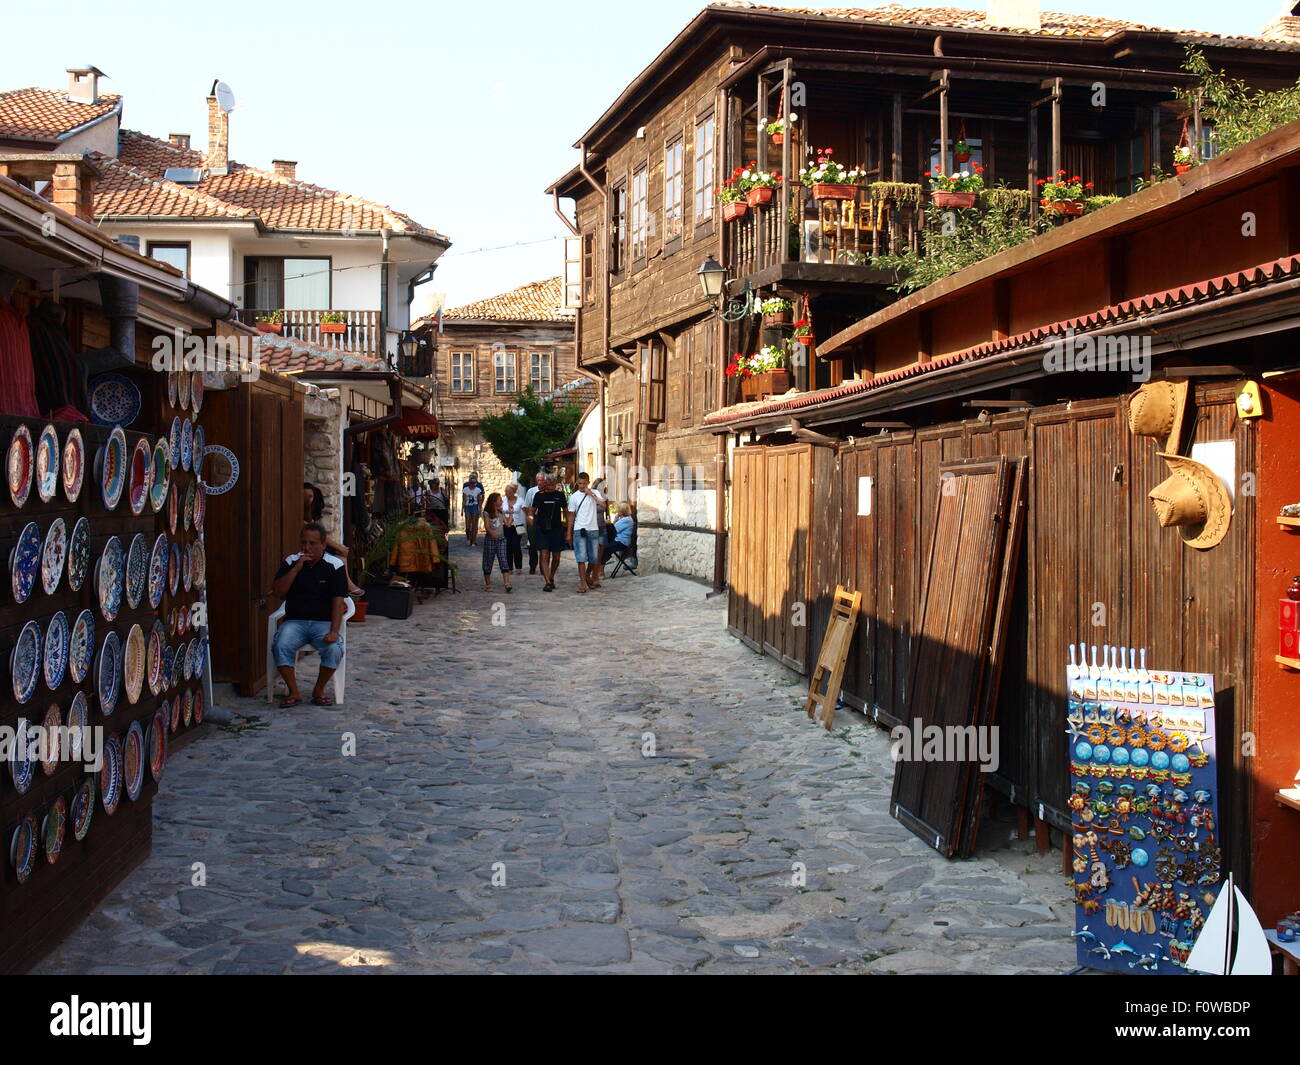 Bulgarien, Nessebar. Geschäfte mit folk-Produkte und Souvenirs in einer stilvollen Holzhäusern. Stockfoto